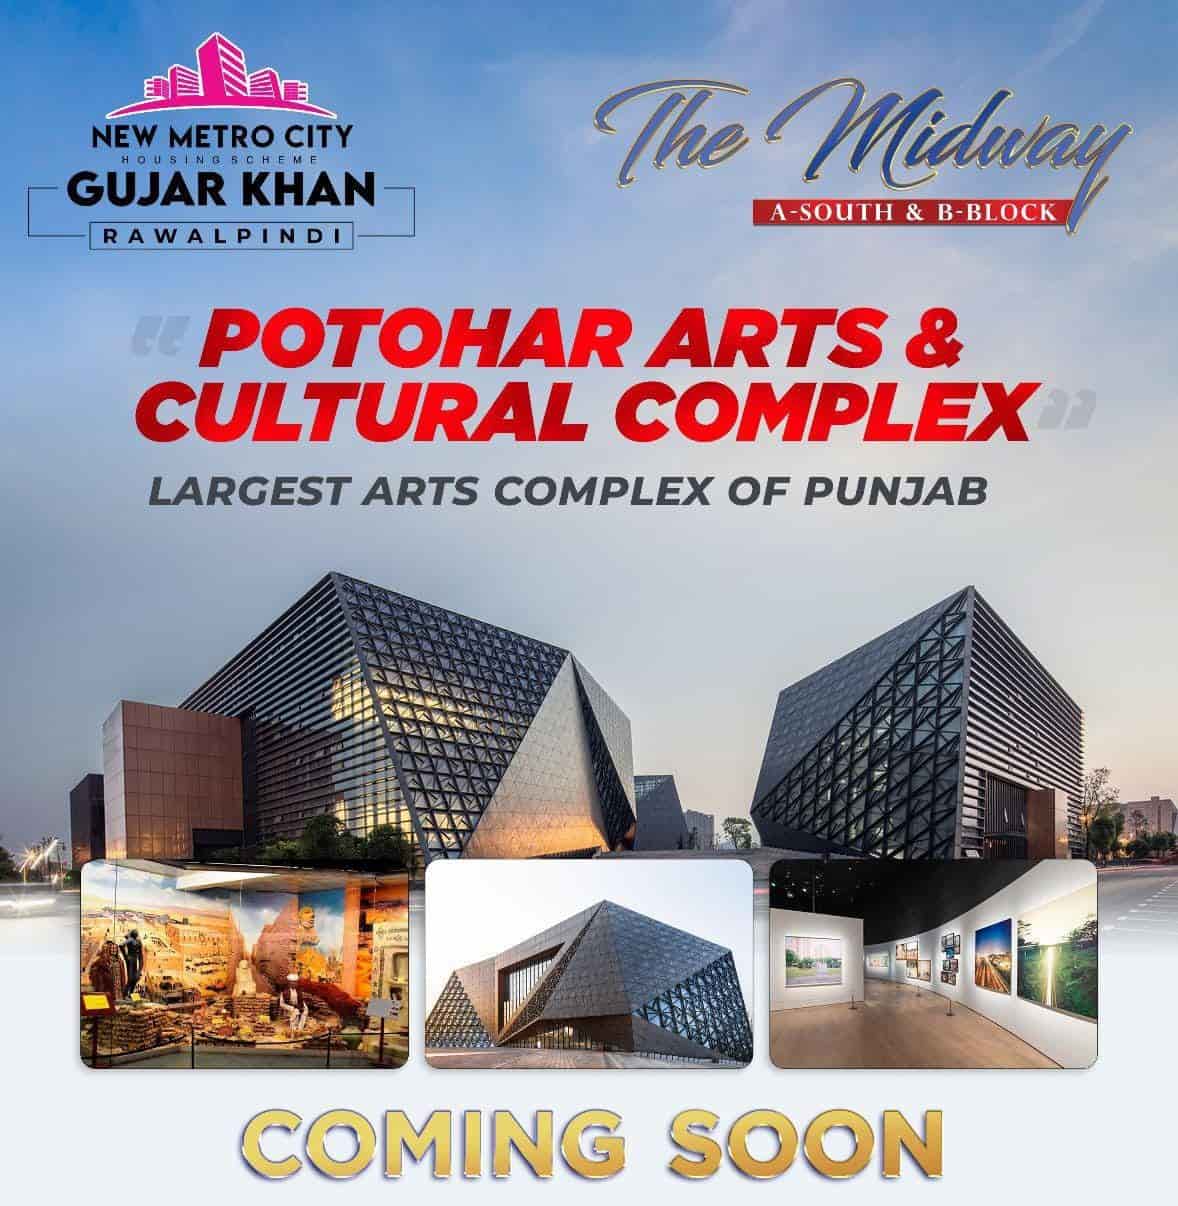 New metro city Gujar khan Pothar arts & cultural complex